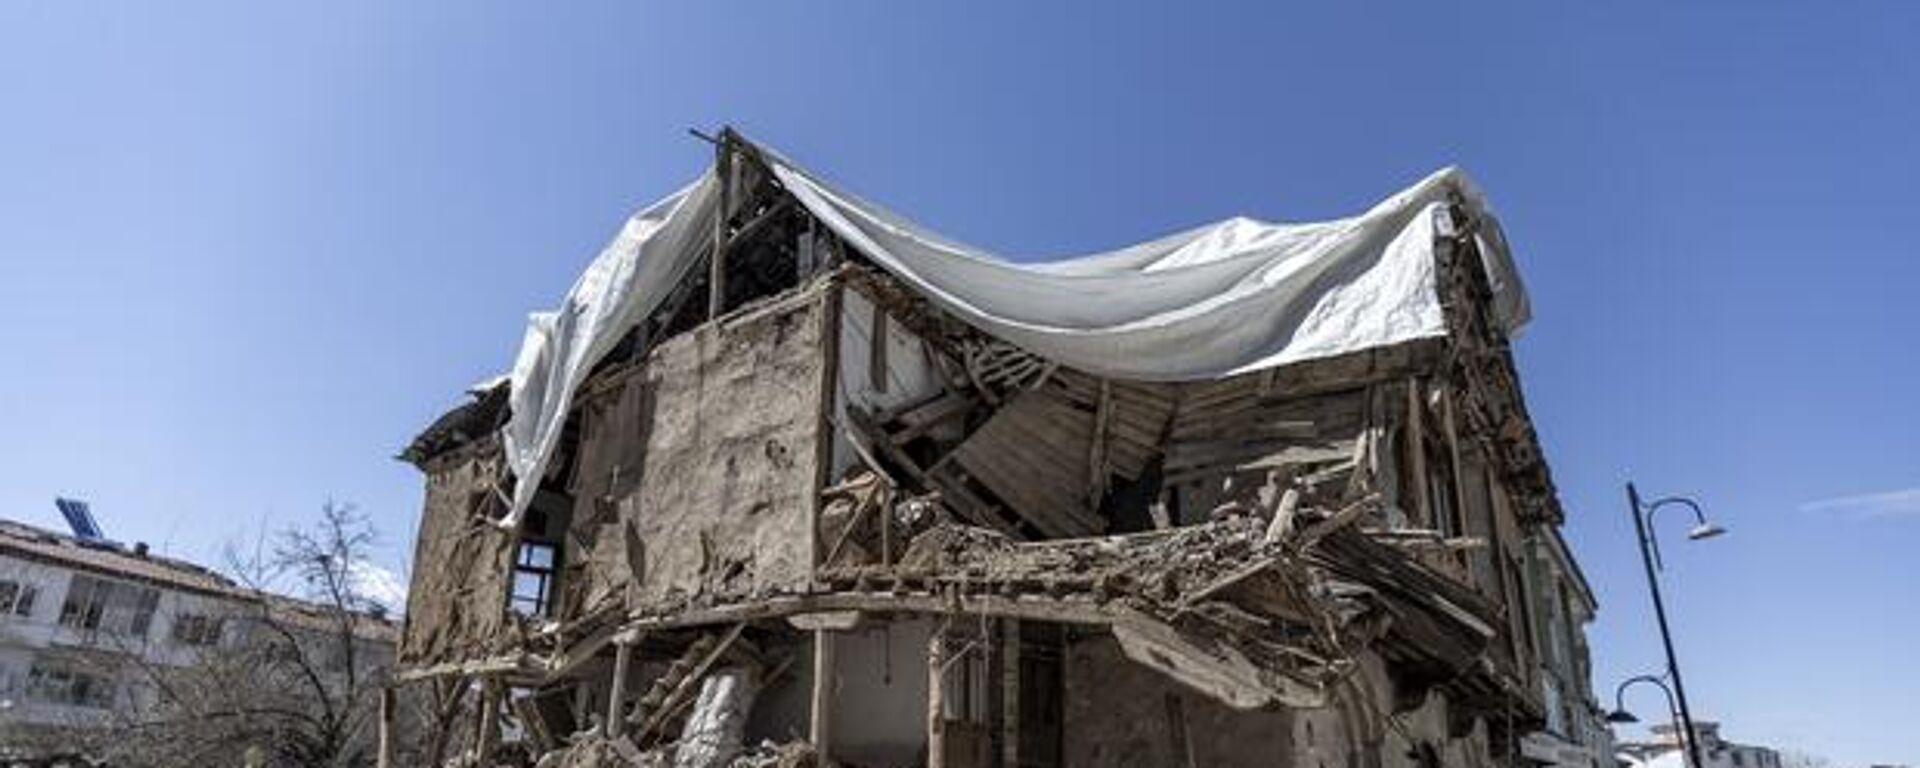 Kahramanmaraş merkezli 6 Şubat'taki depremlerin büyük yıkıma neden olduğu Malatya'da enkaz kaldırma çalışmaları sürüyor. - Sputnik Türkiye, 1920, 03.04.2023